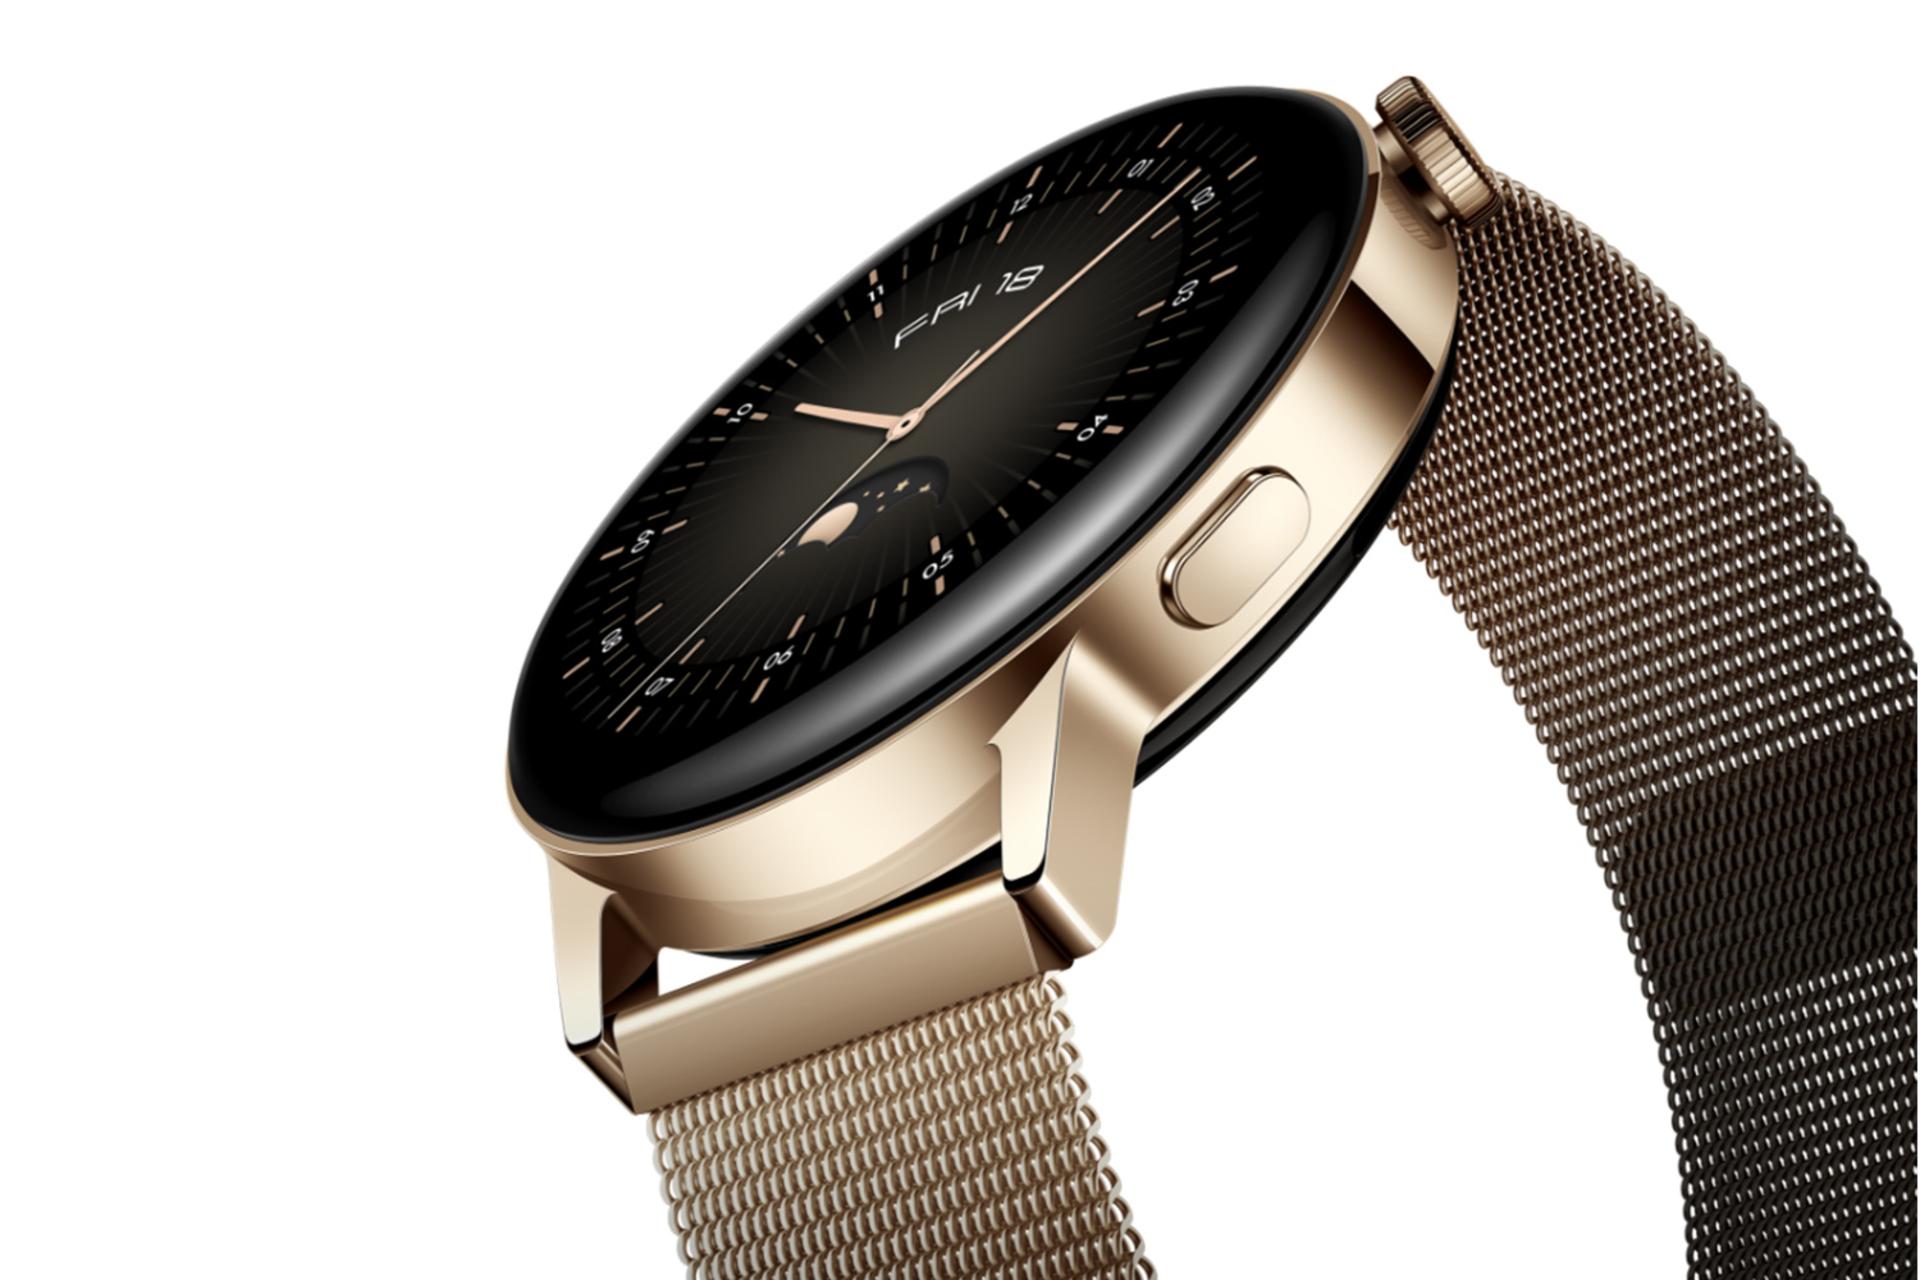 نمای کنار ساعت هوشمند هواوی جی تی 3 رنگ طلایی